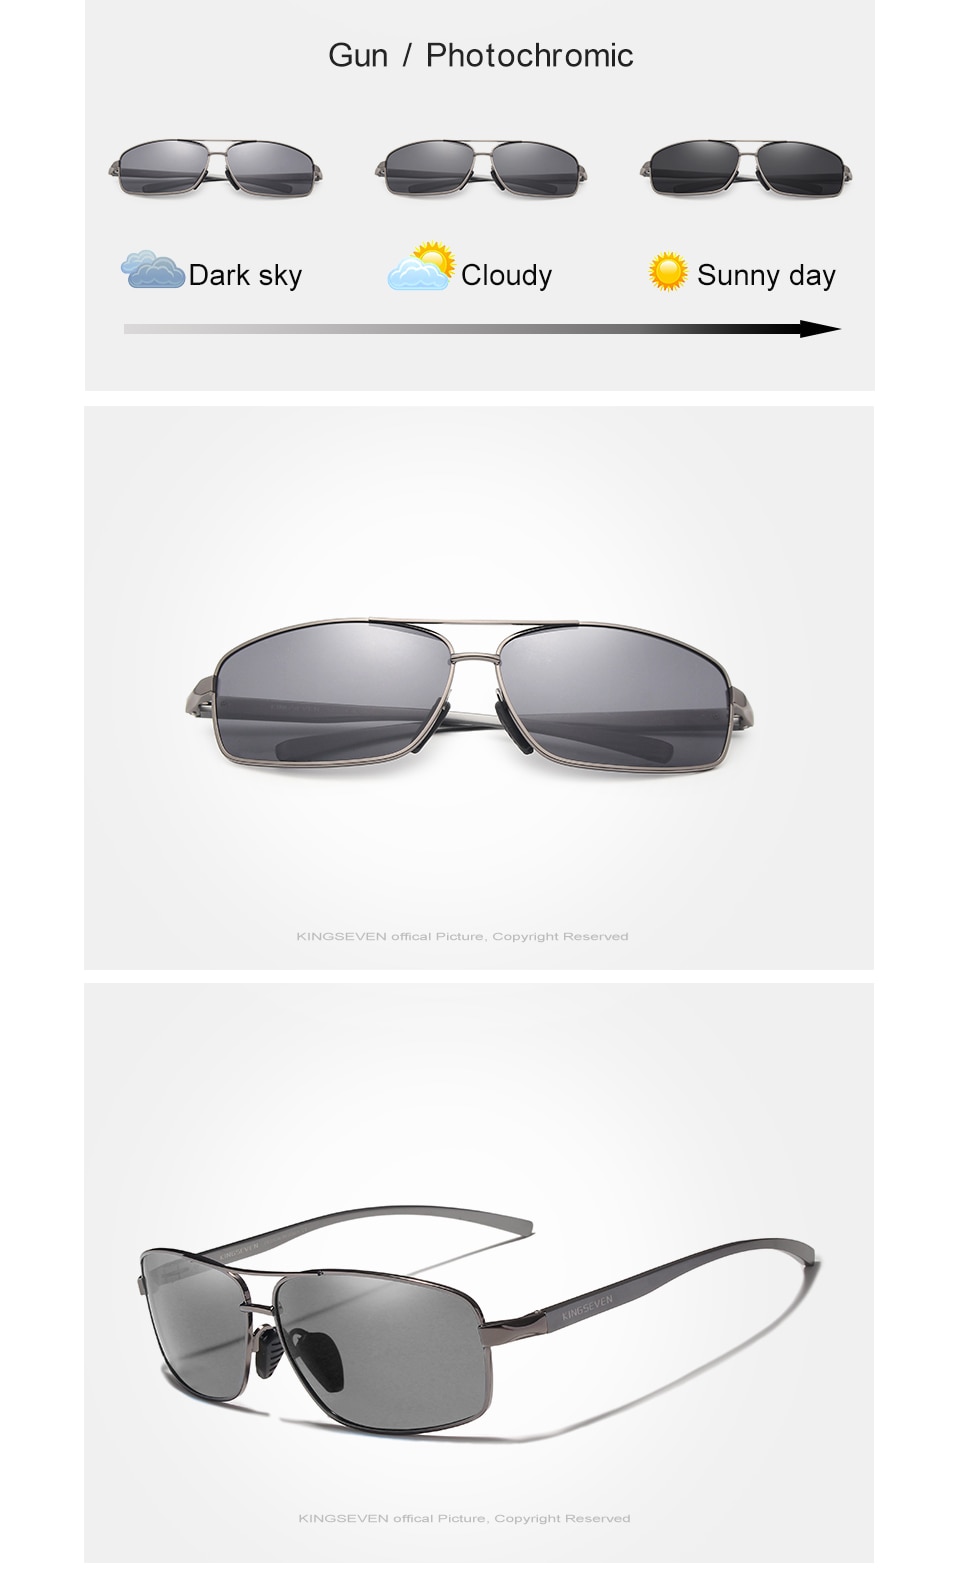 KINGSEVEN New Photochromic Sunglasses Men Chameleon Glasses